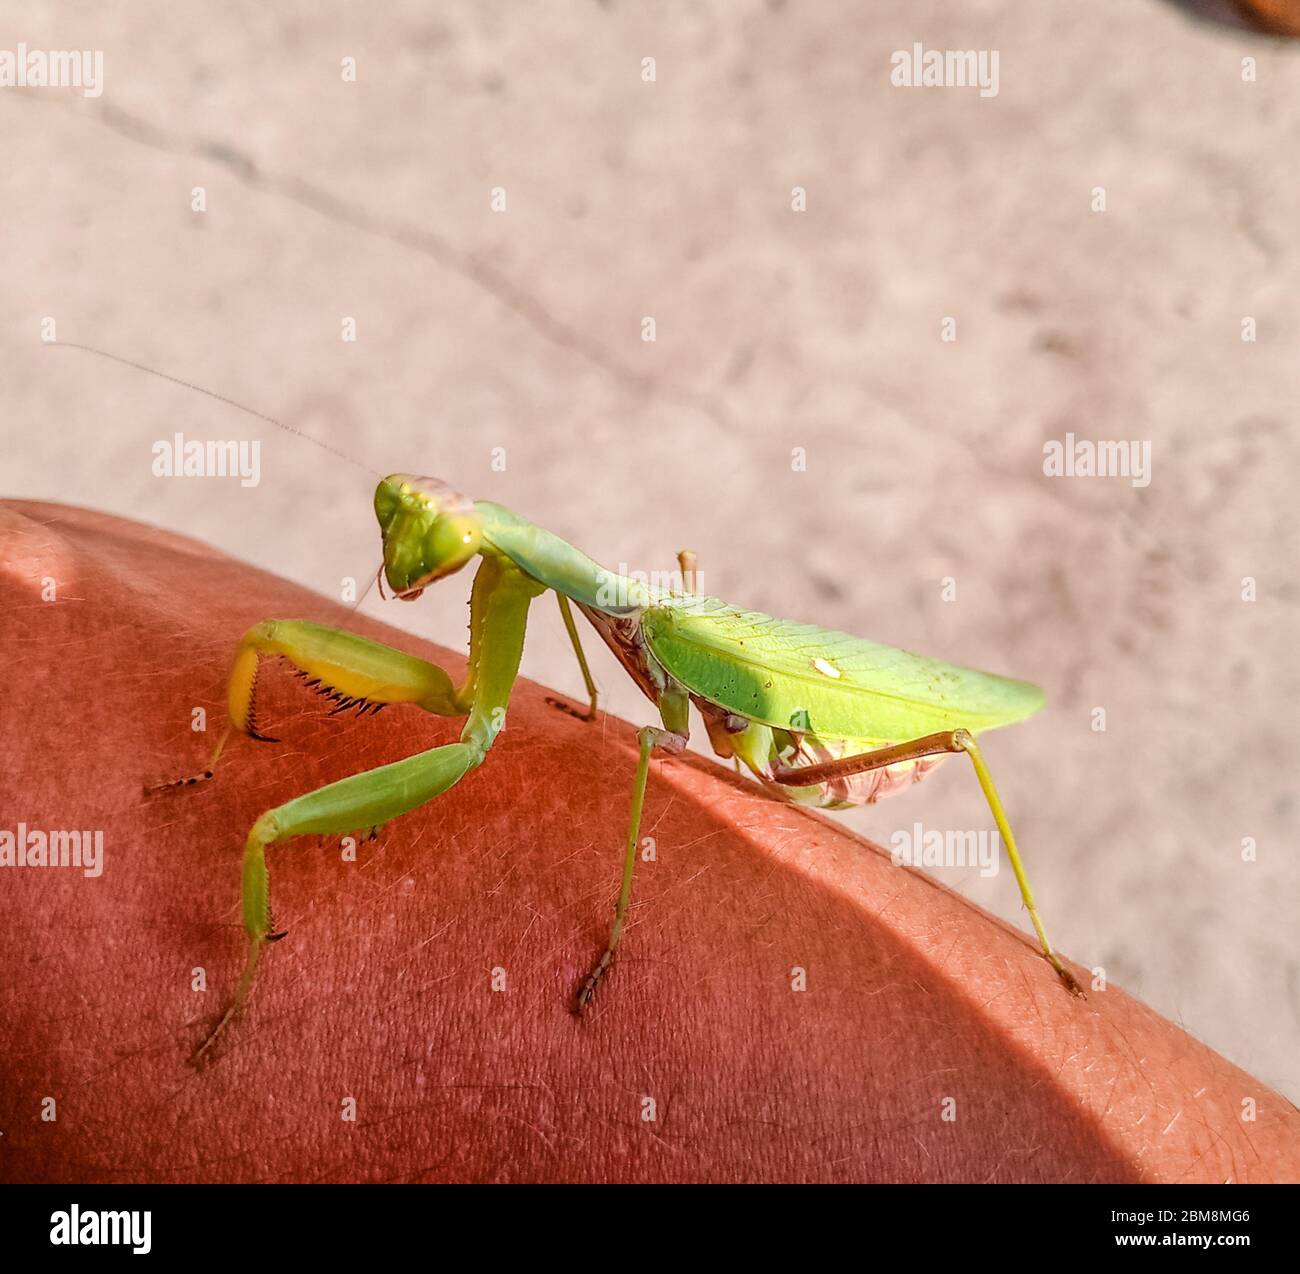 Une mantis femelle, un insecte de la mante prédatrice sur une main humaine. Banque D'Images